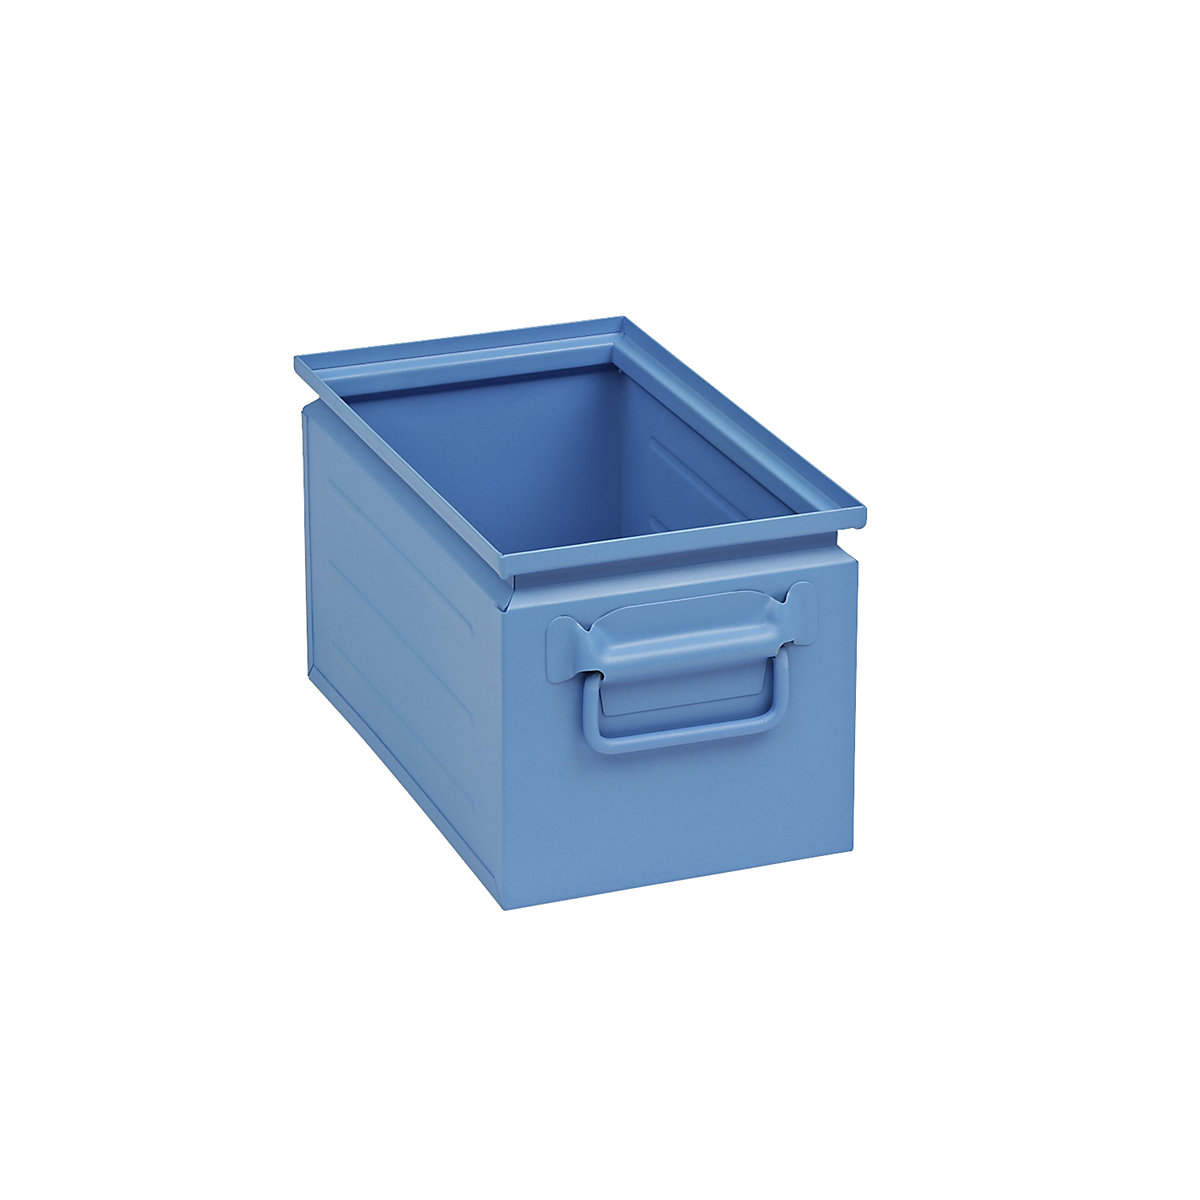 Stapelkasten aus Stahlblech, Inhalt ca. 14 l, lichtblau RAL 5012